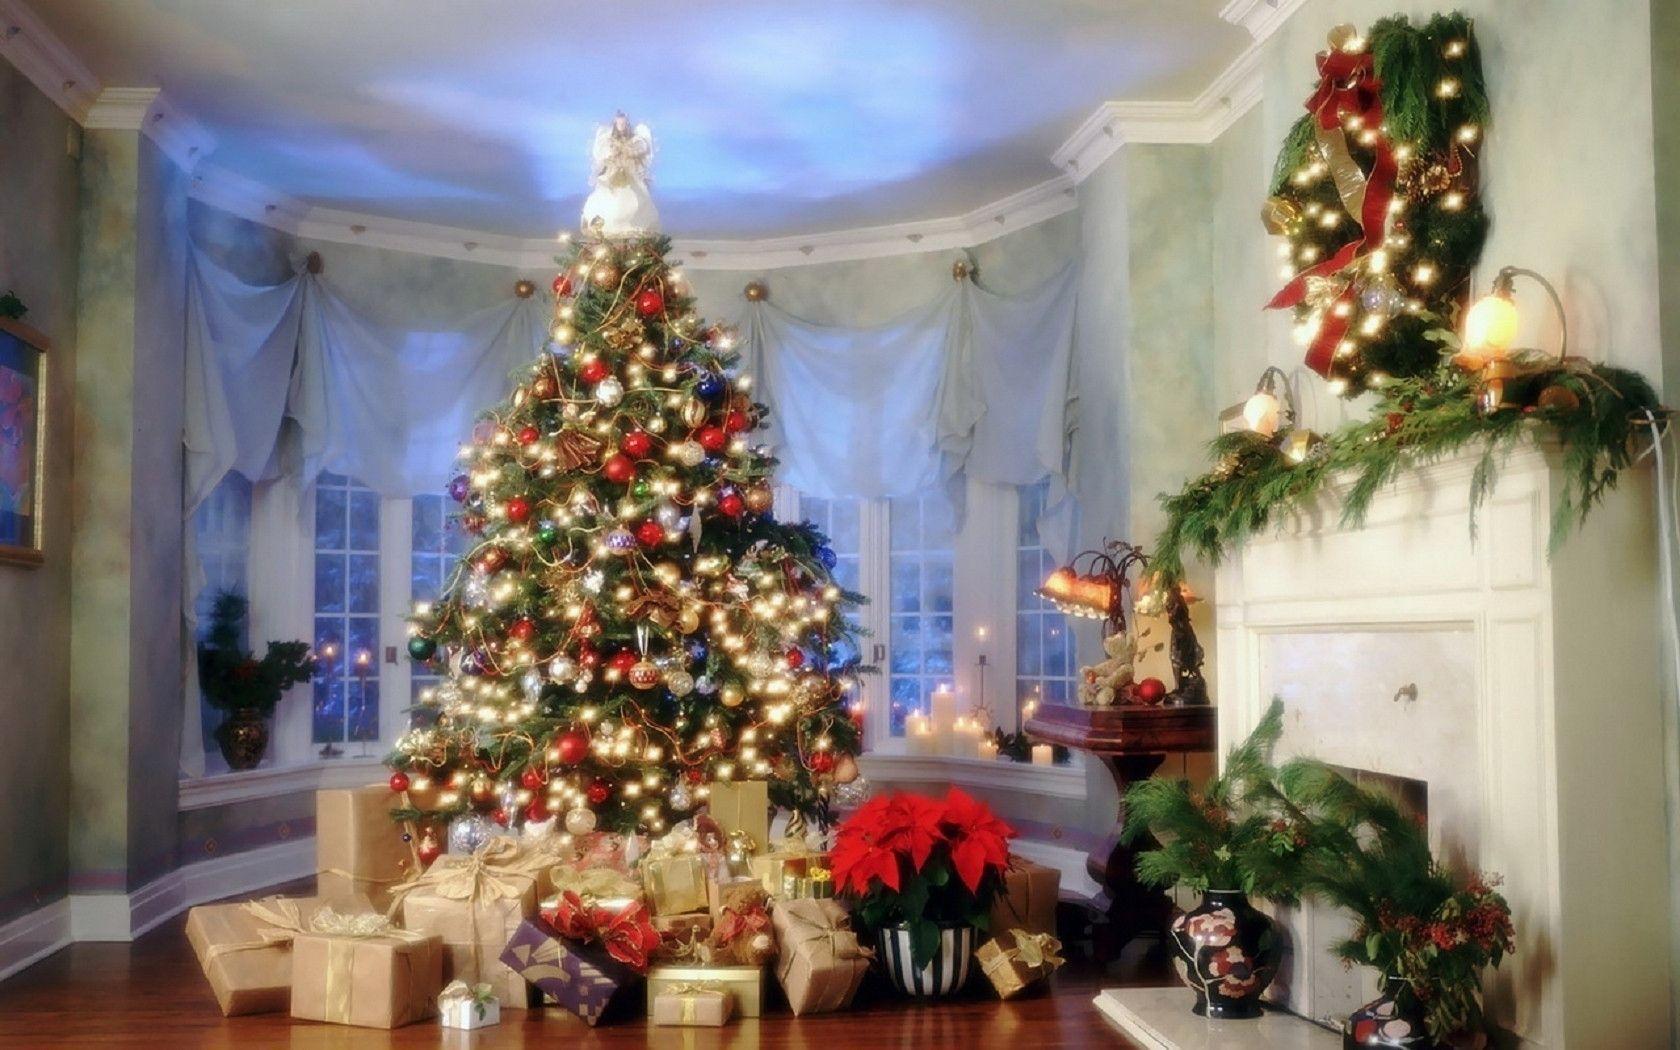 Keywords: christmas, winter, merry christmas, image